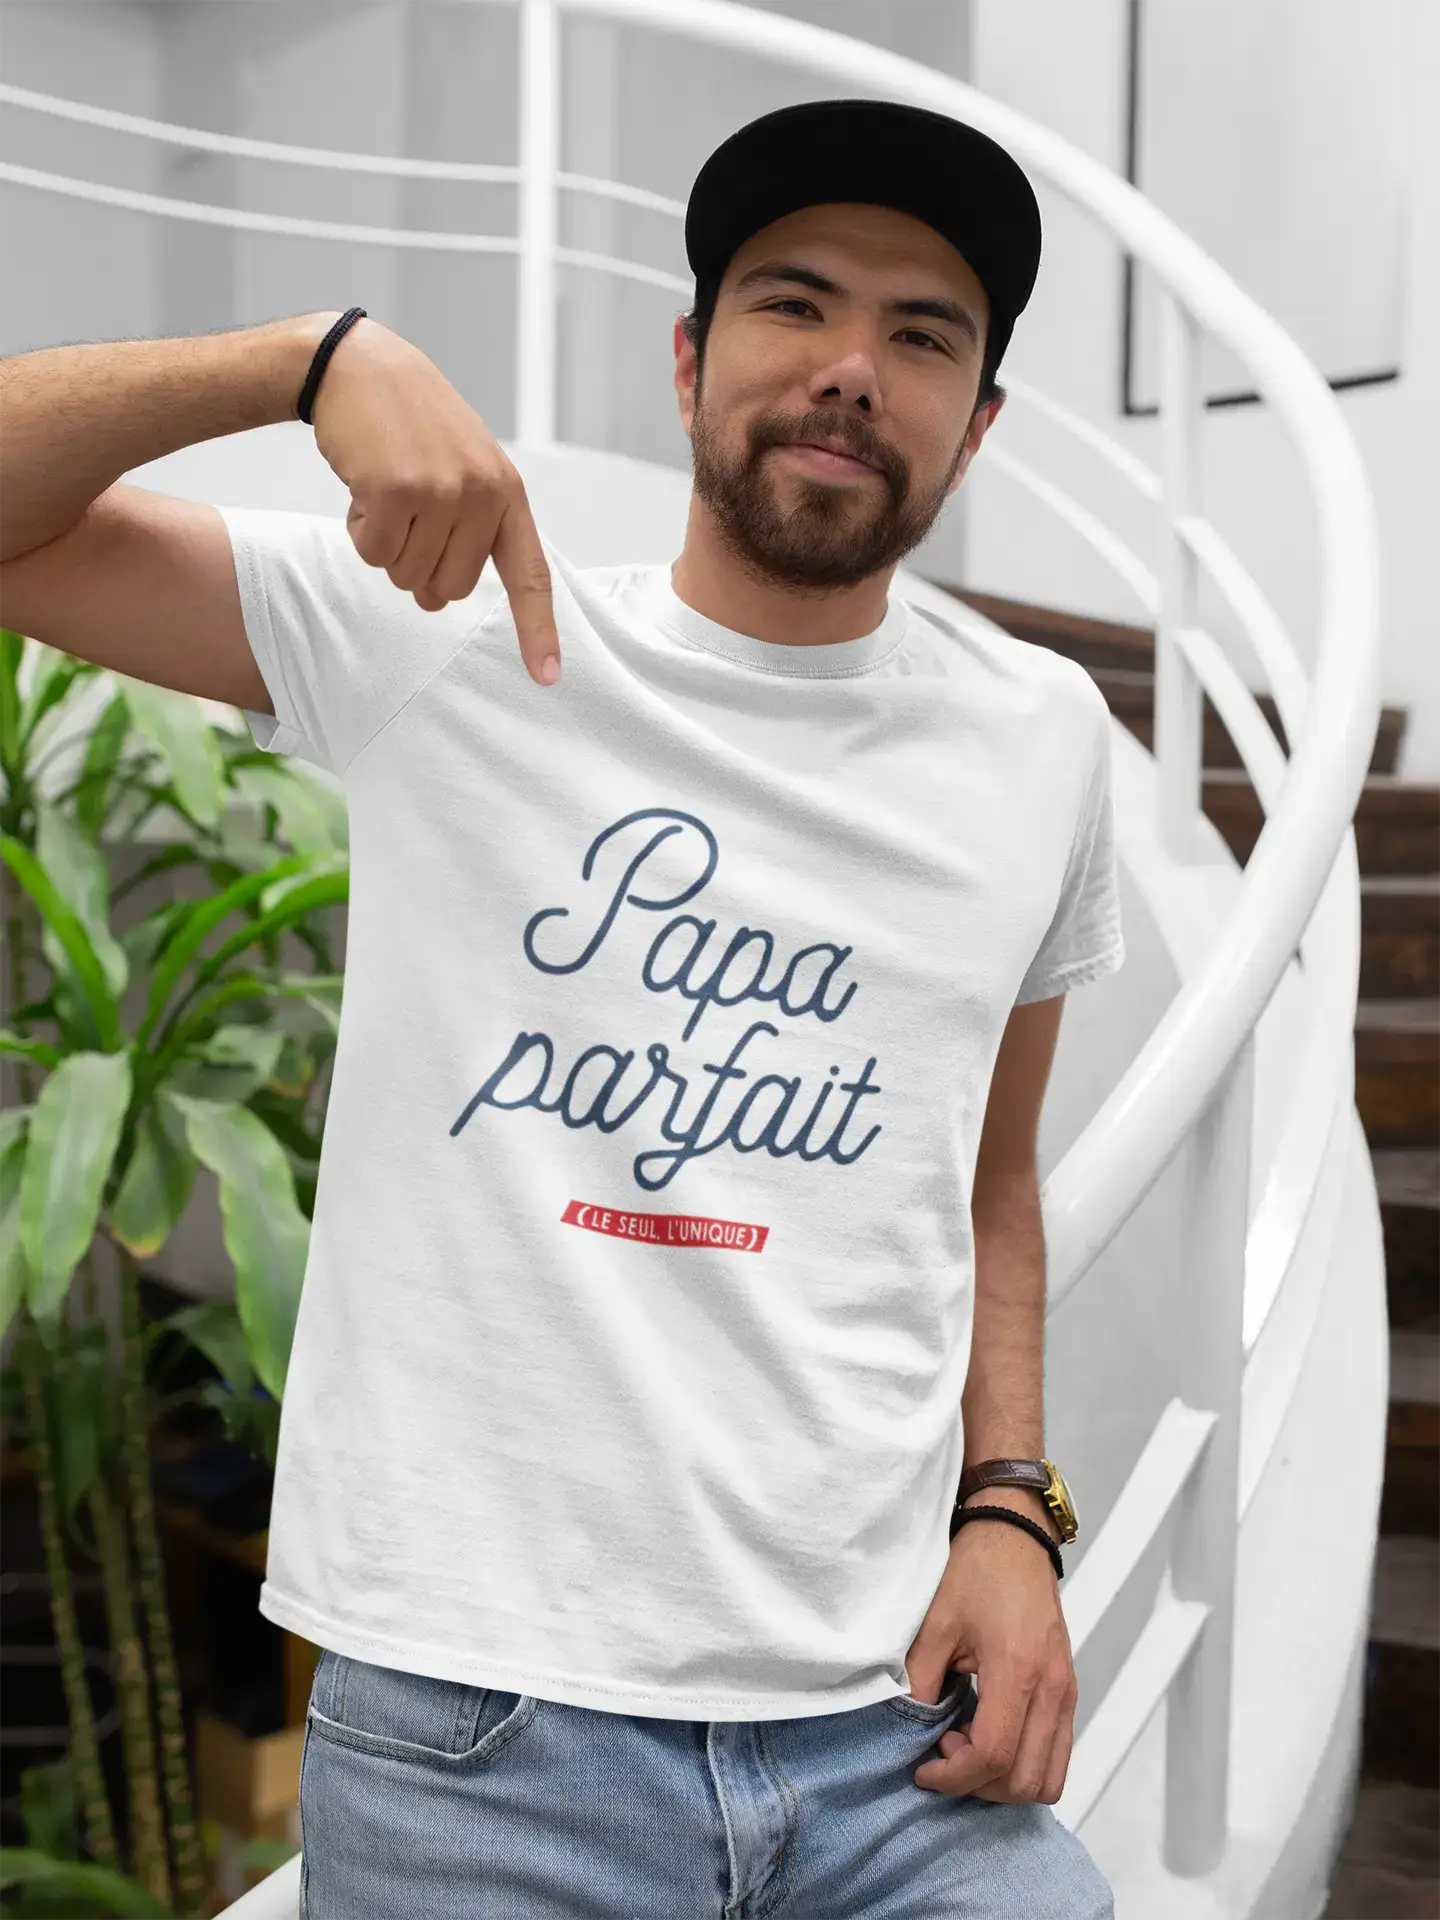 Ultrabasic - Homme Graphique Papa Parfait T-Shirt Marine Lettre